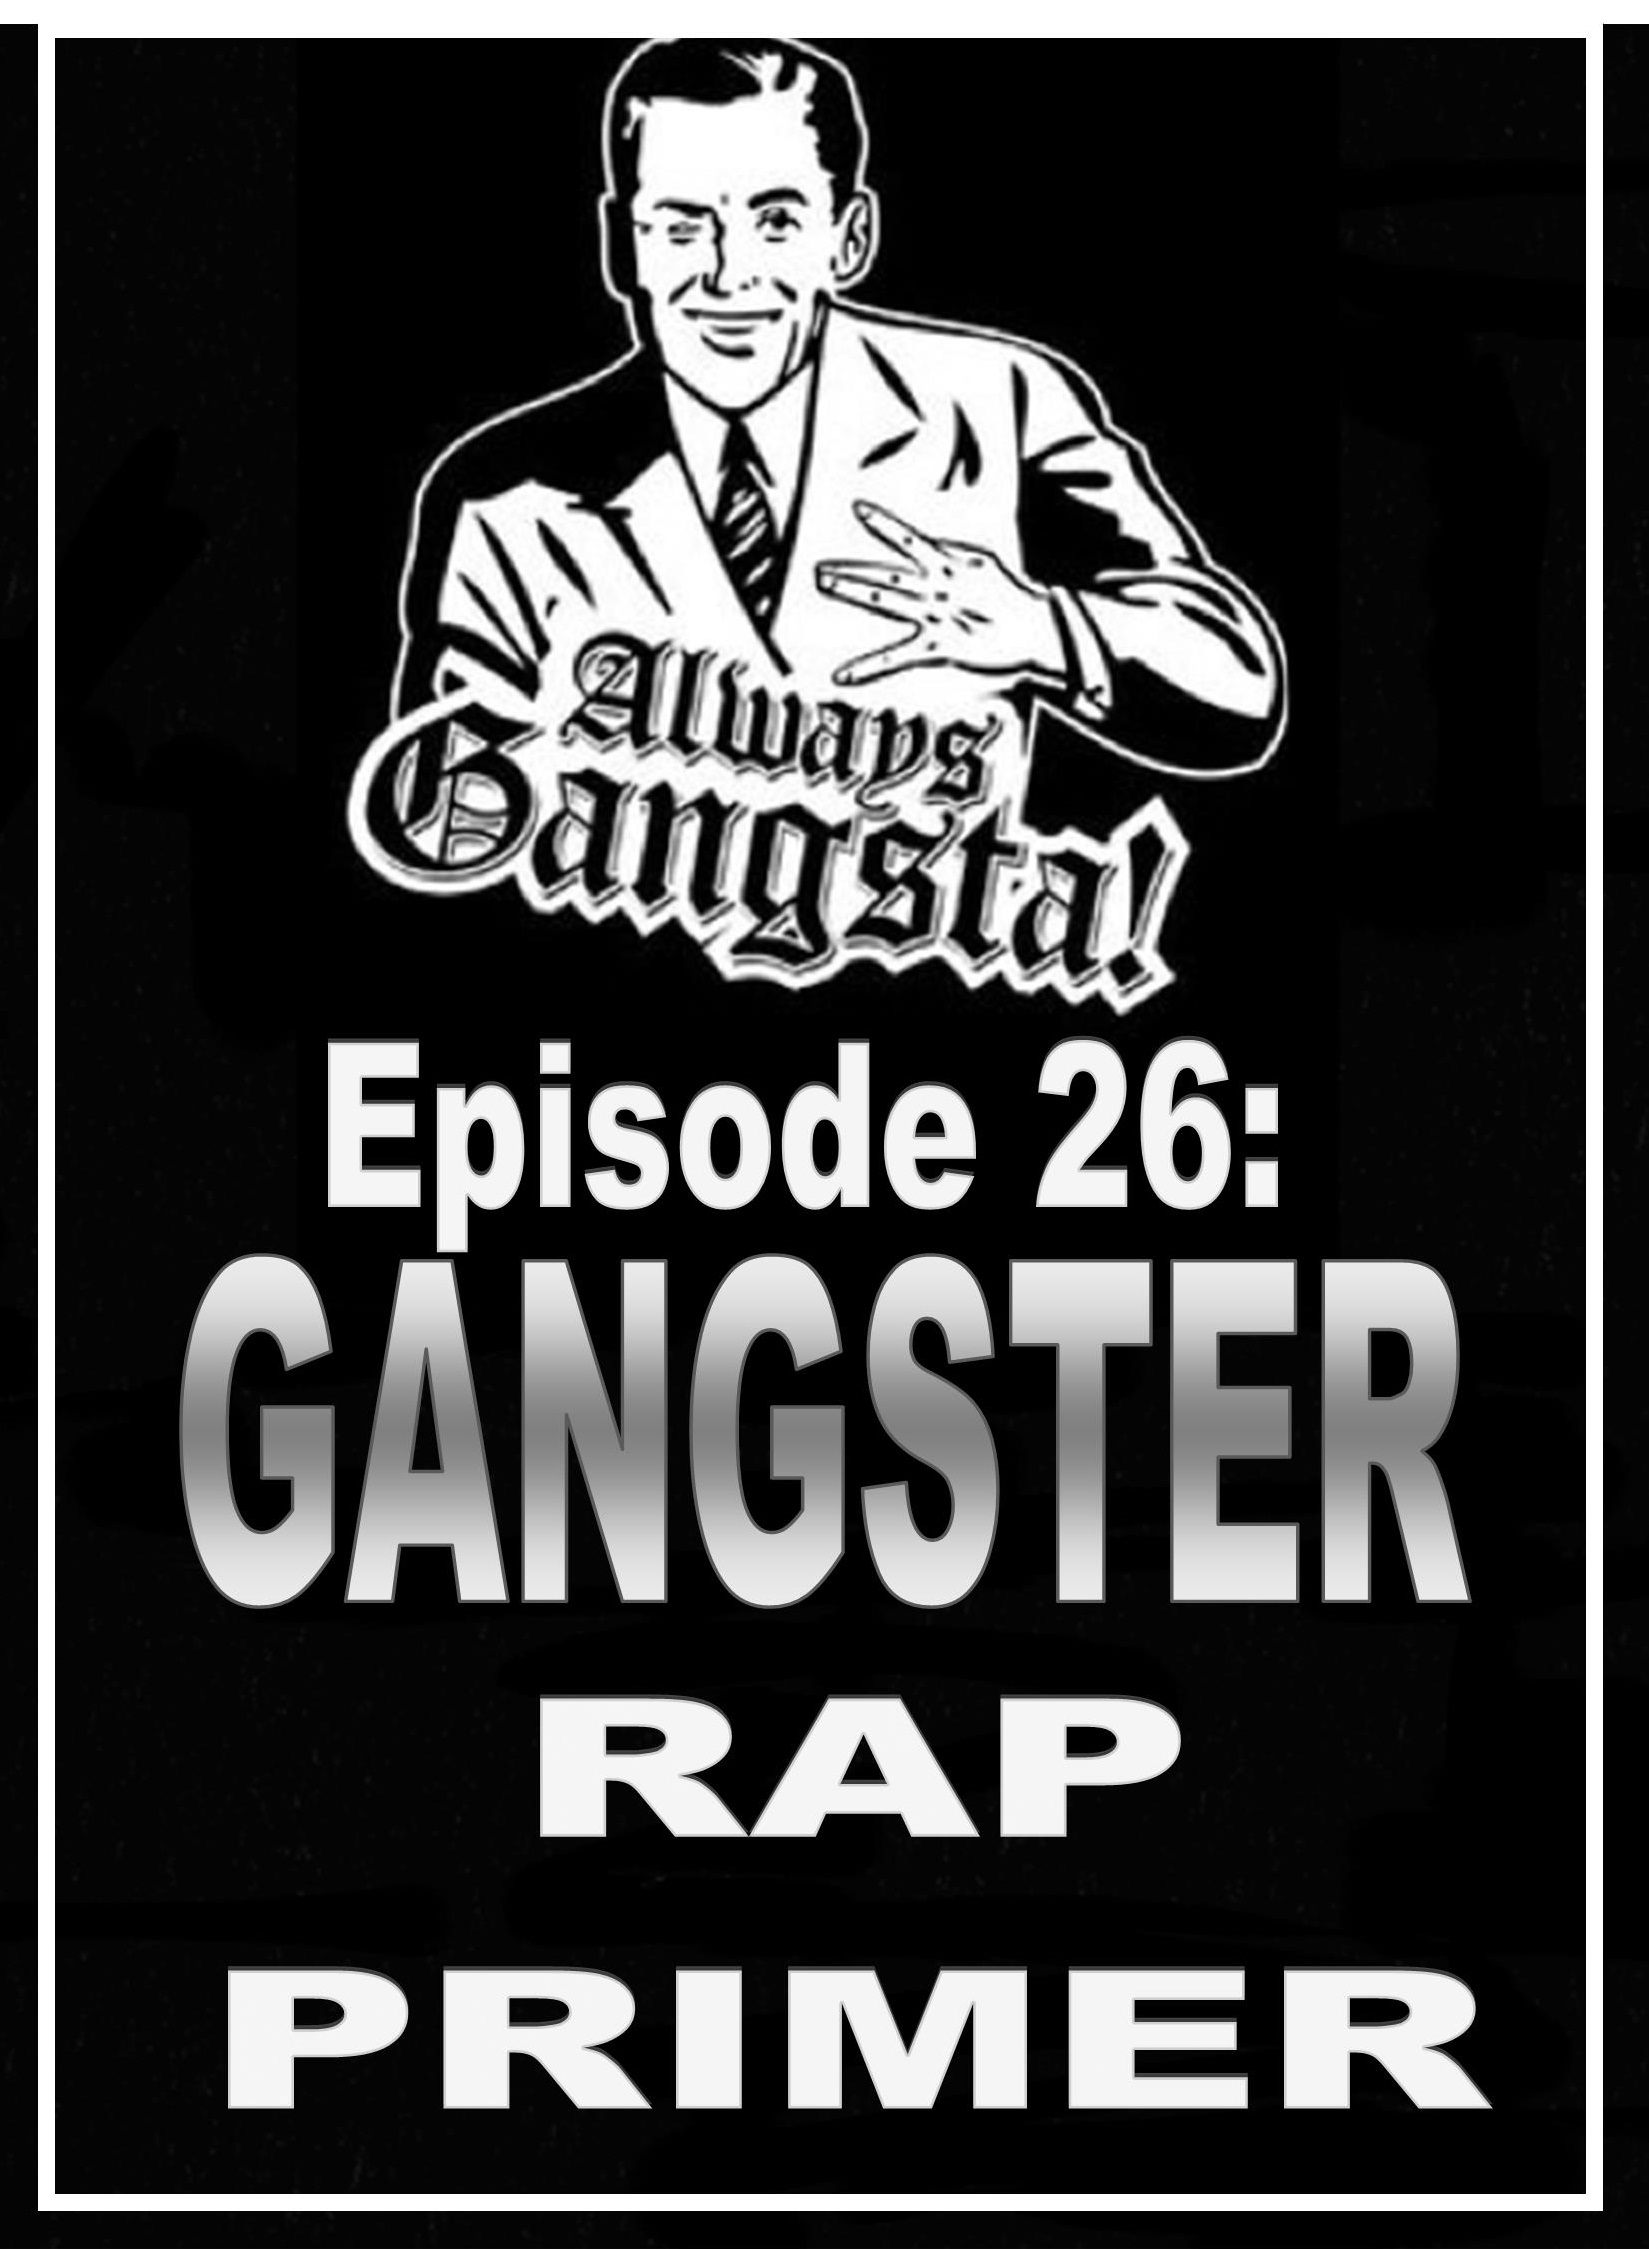 Episode 26: The Gangster Rap Primer